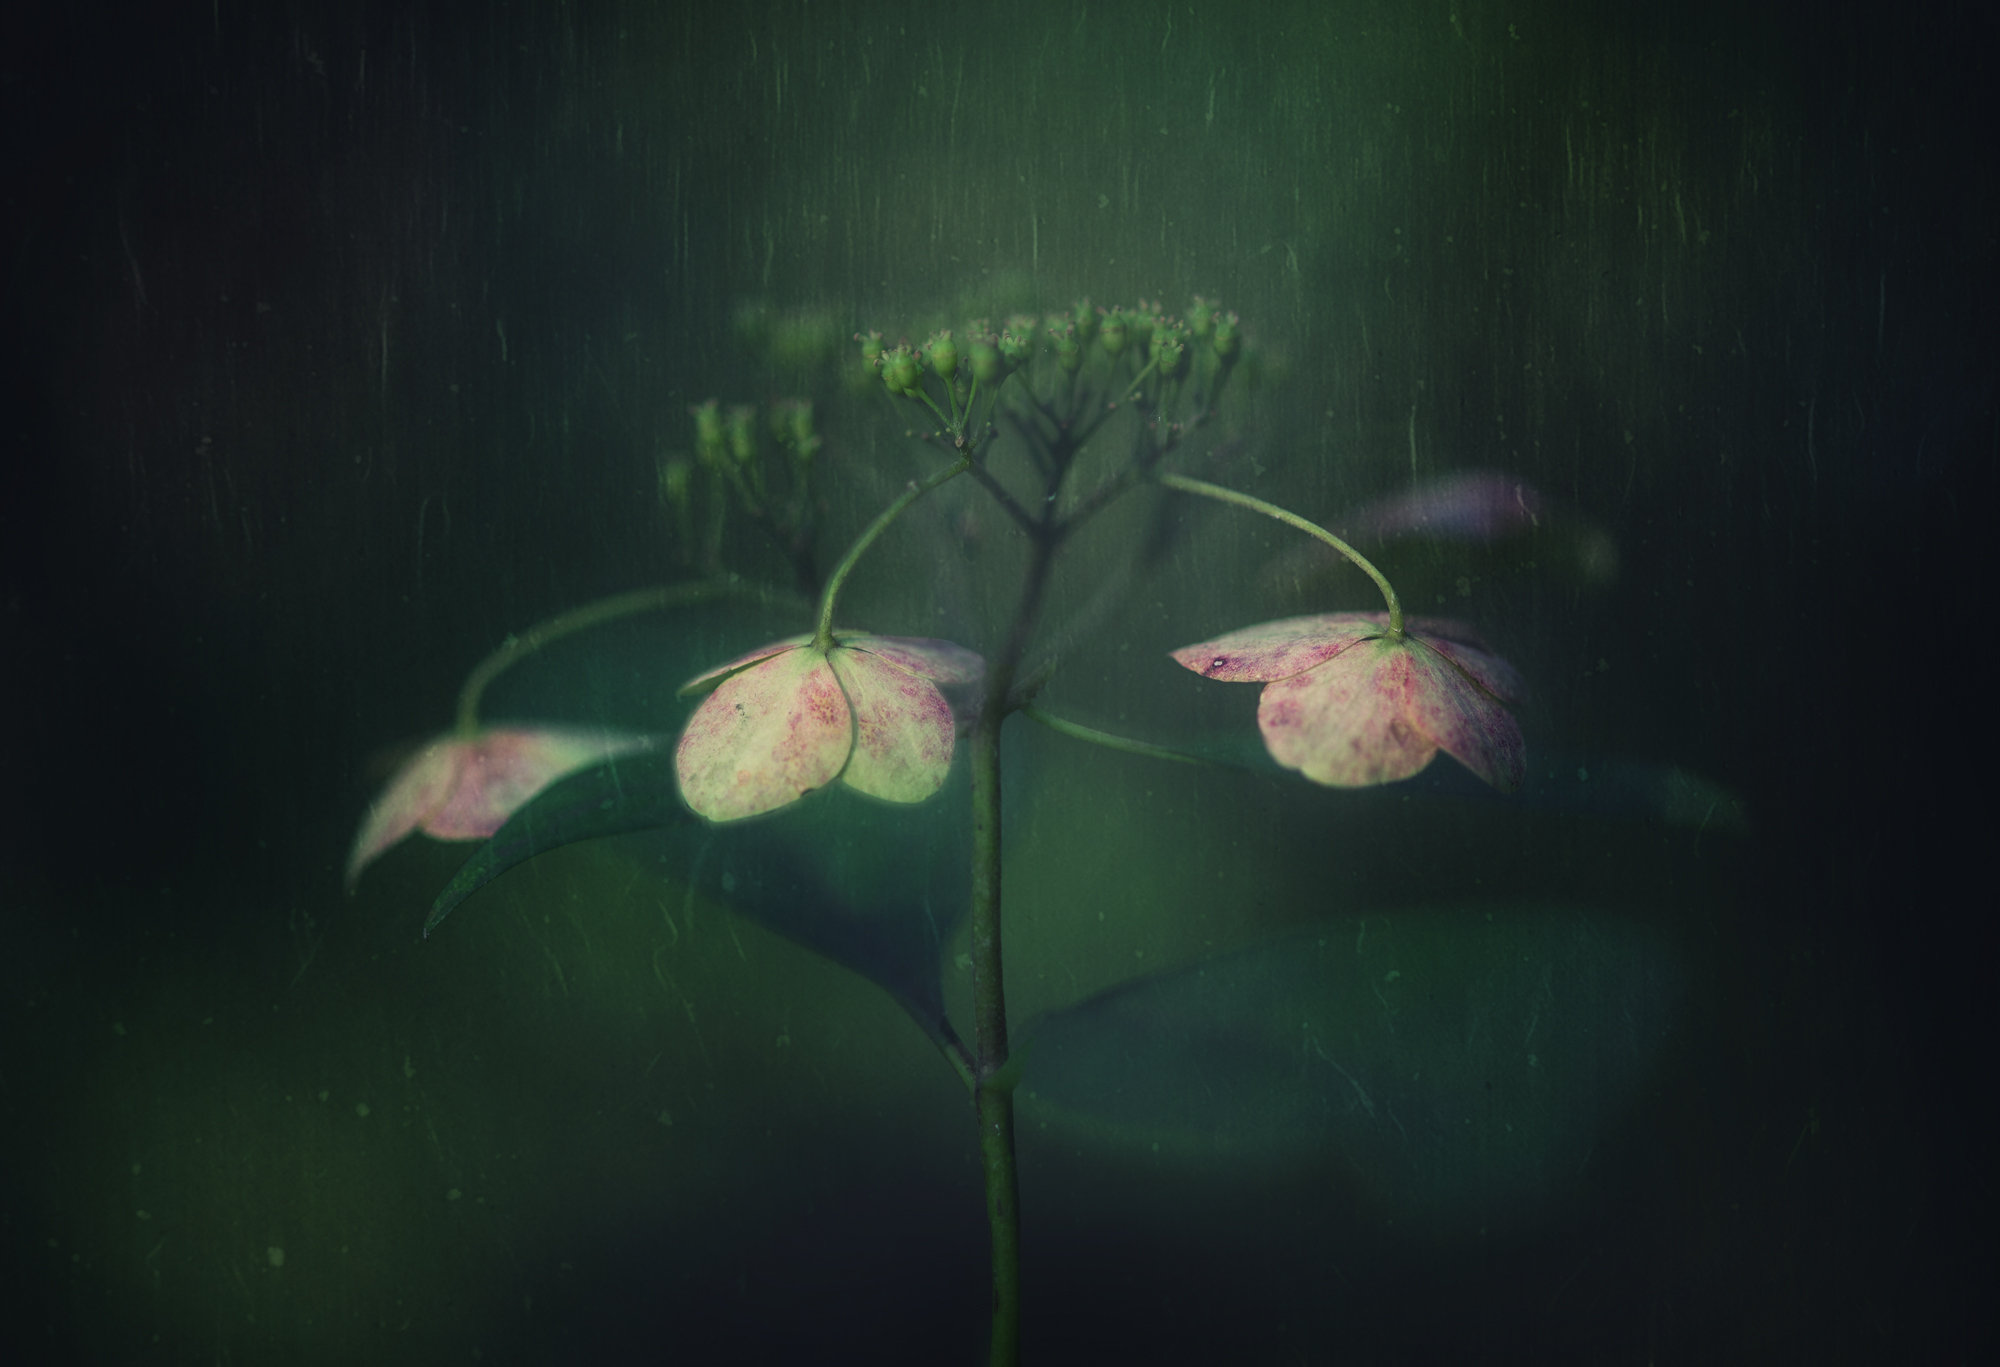 Takashi Suzuki – Hydrangea withered photo